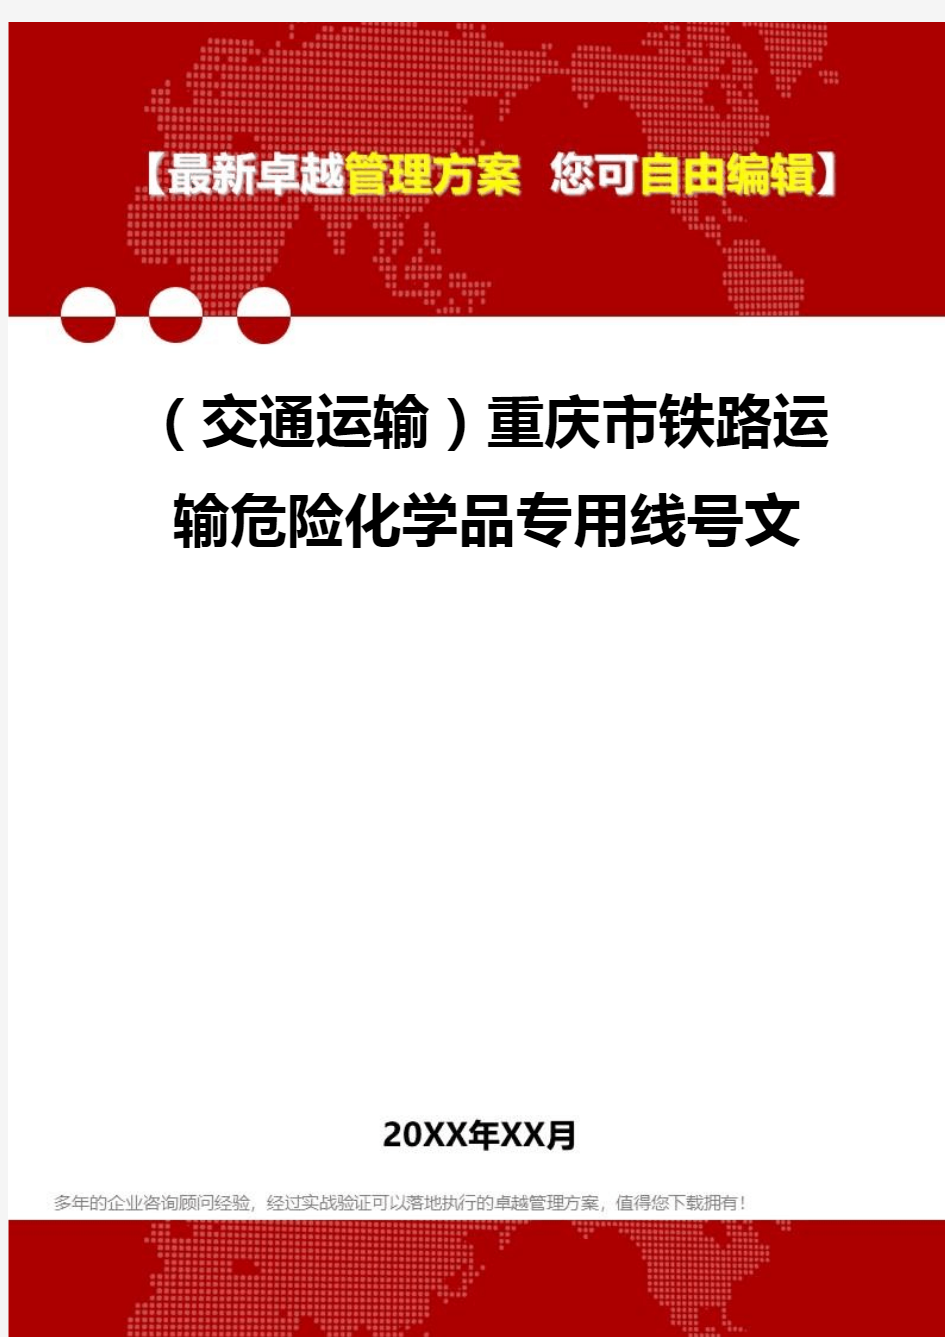 2020年(交通运输)重庆市铁路运输危险化学品专用线号文